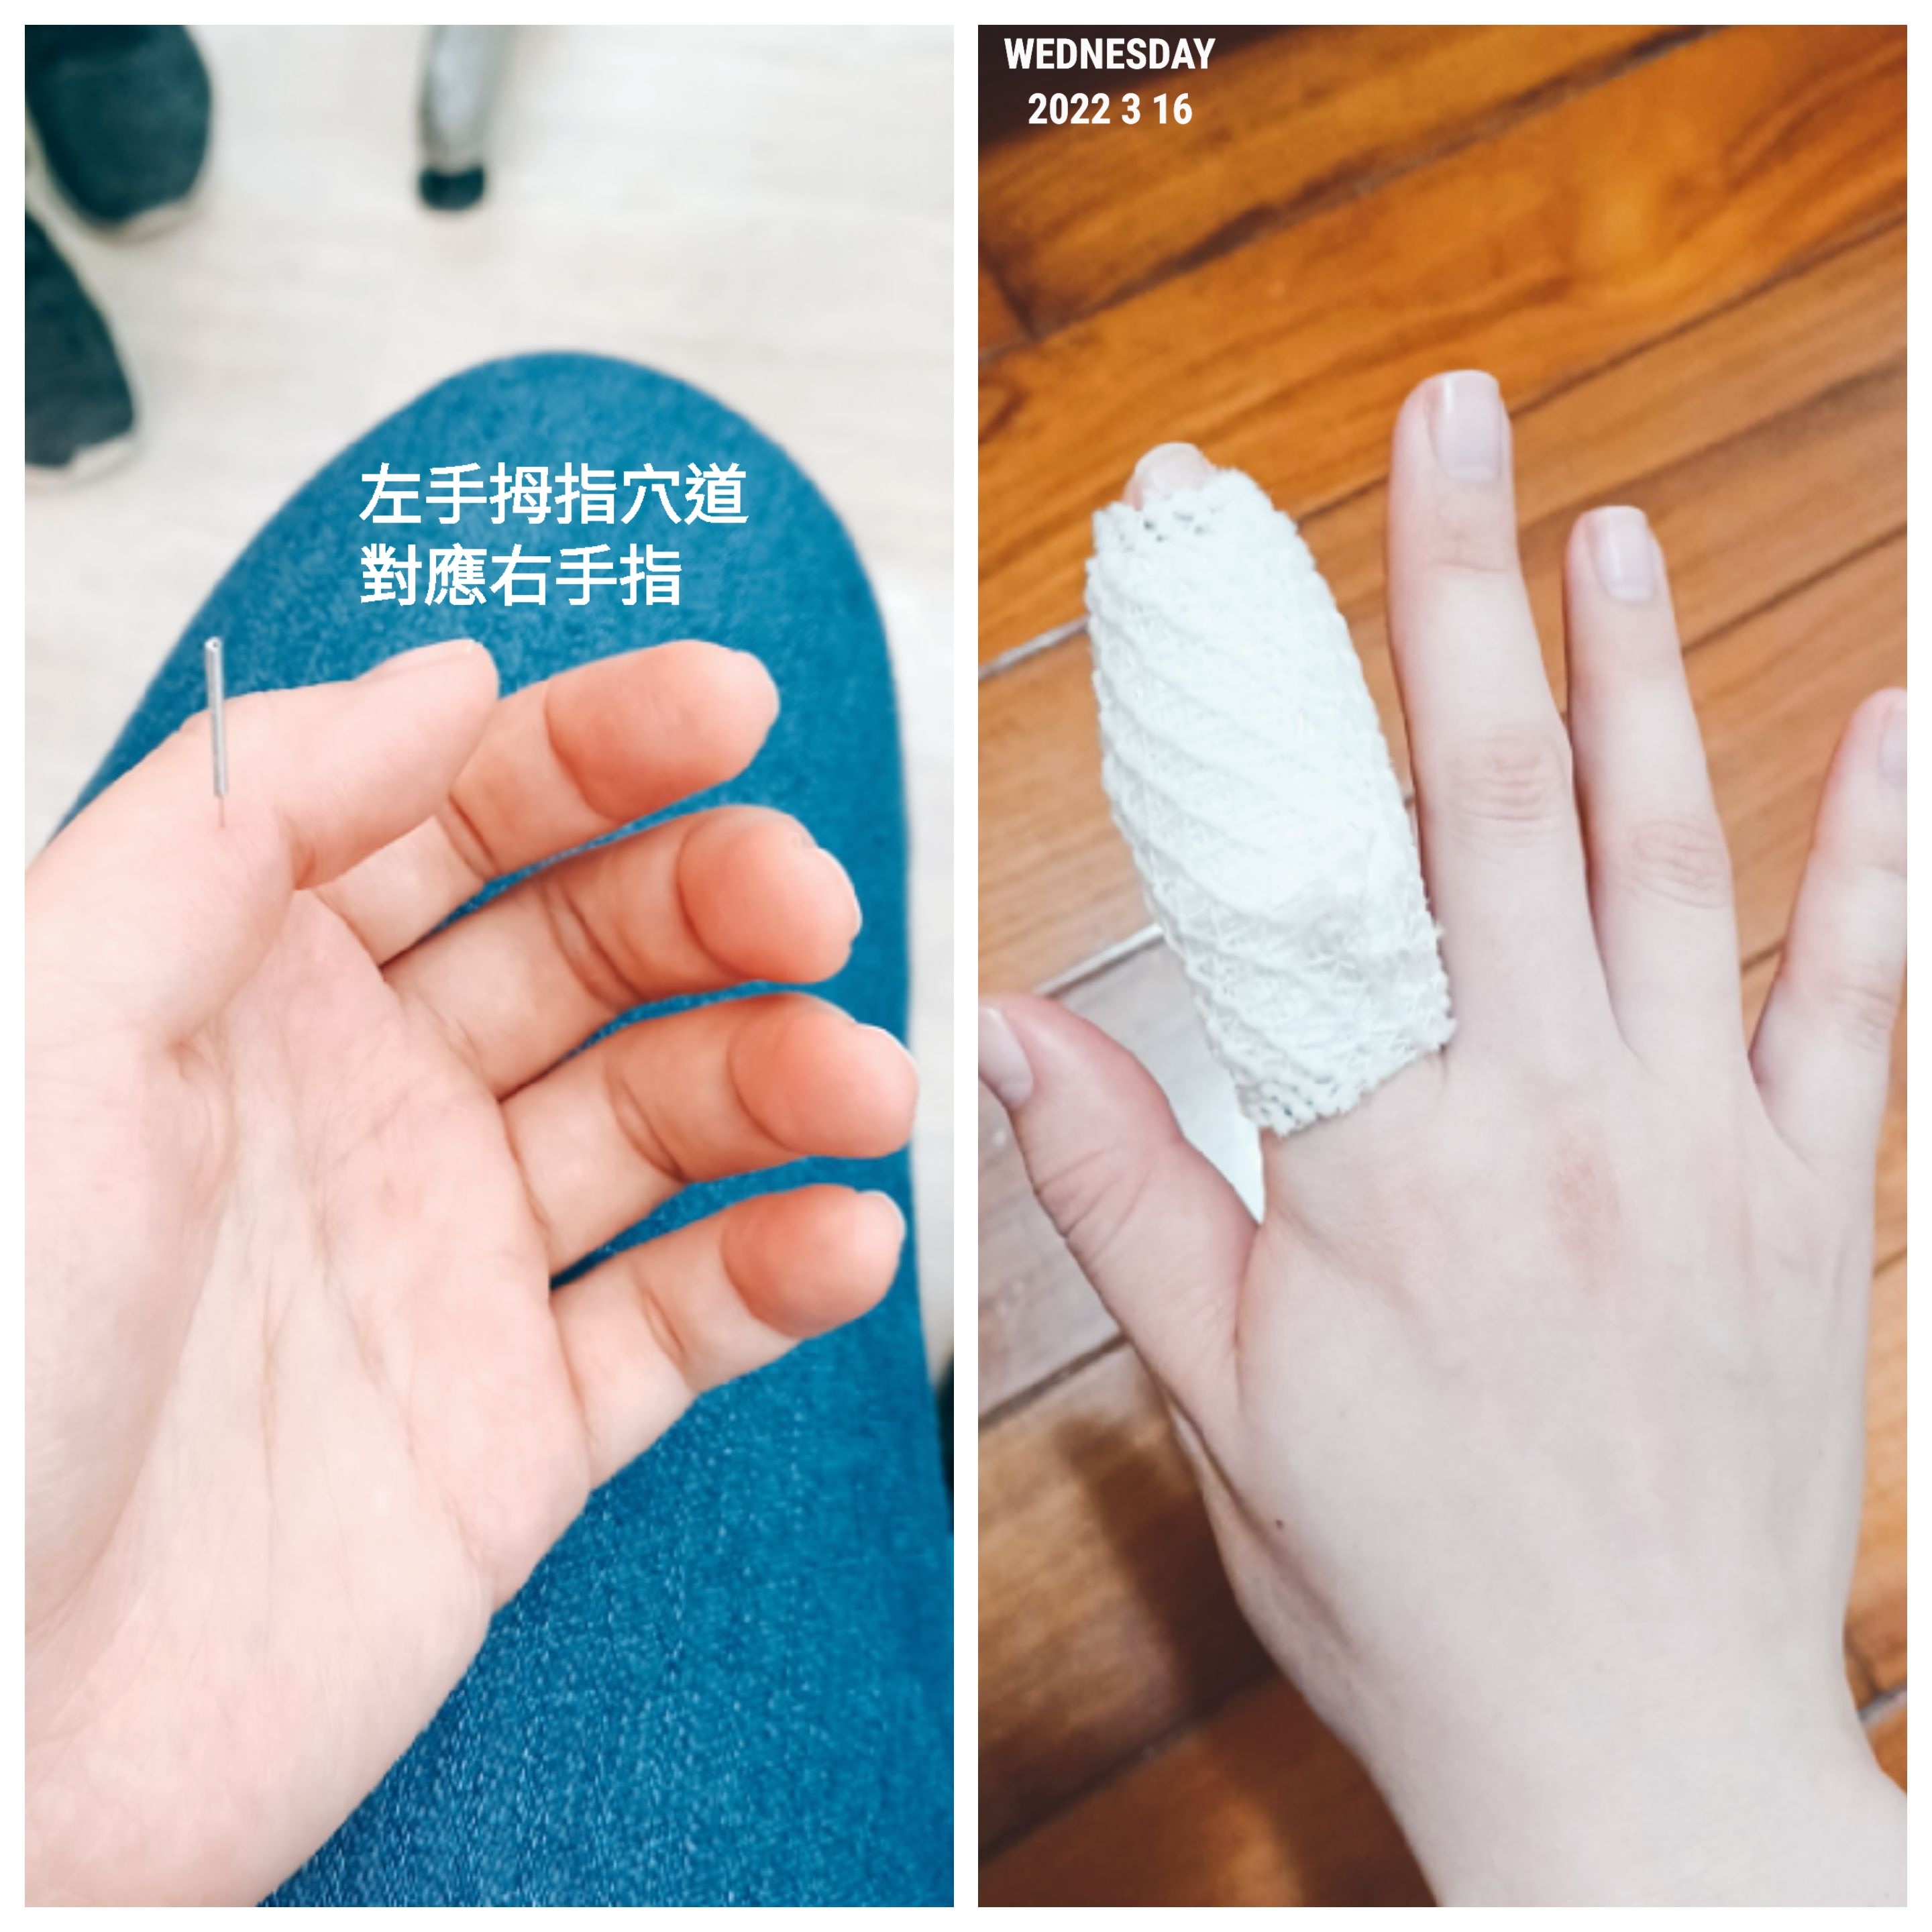 左手右手食指跟中指长了两个疙瘩不疼不痒，请问这是什么问题